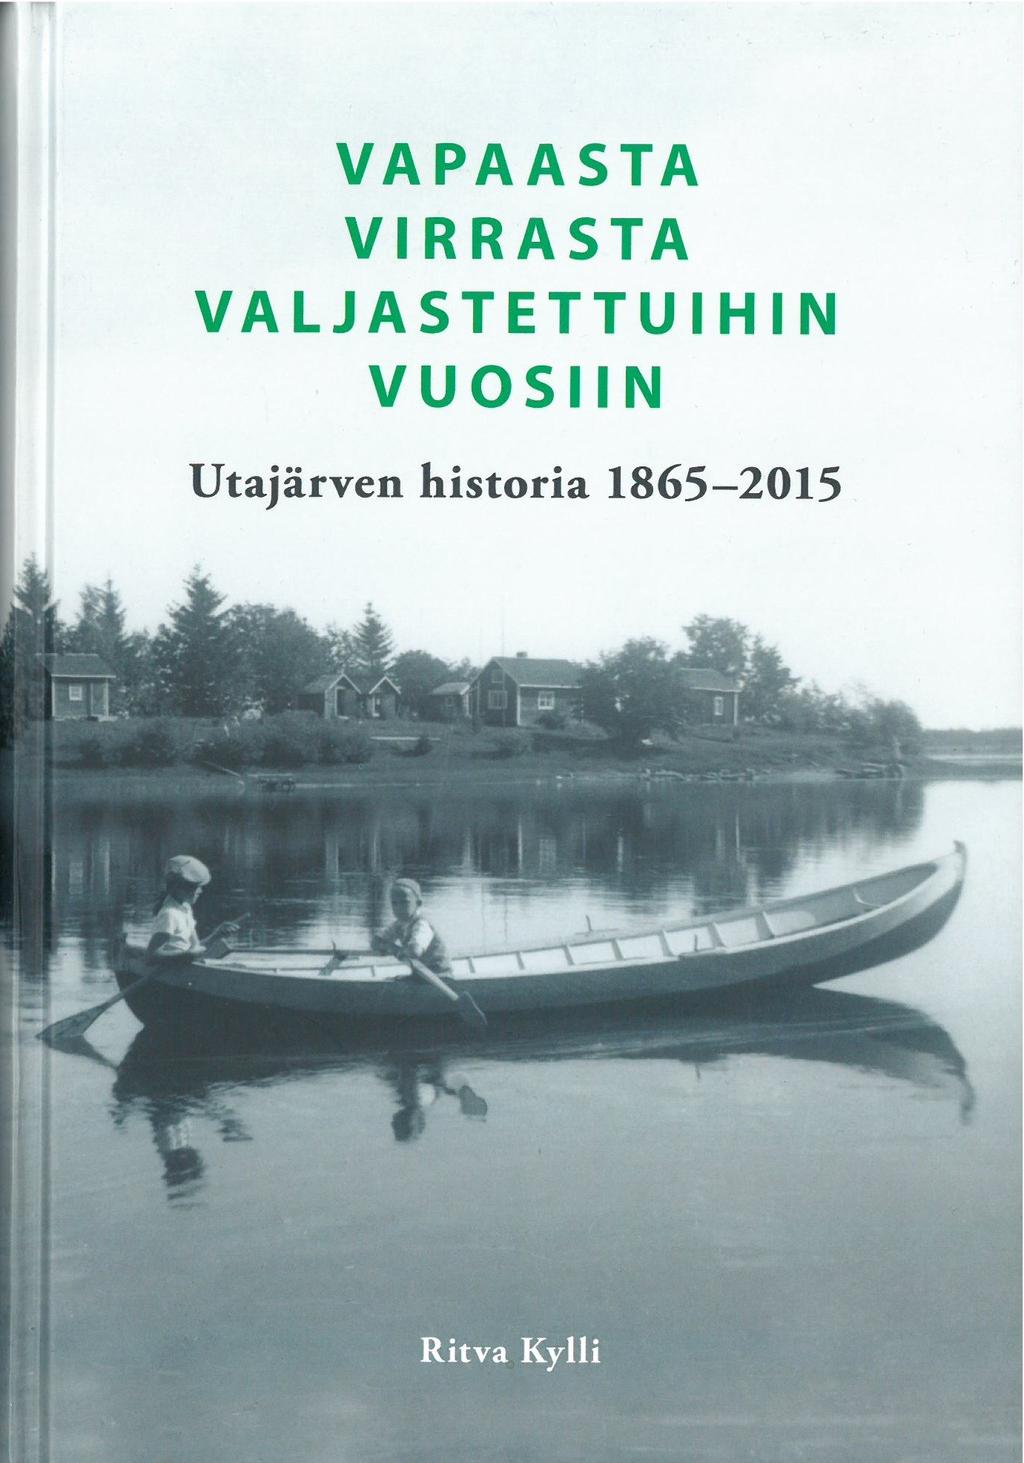 Ritva Kylli Vapaasta virrasta valjastettuihin vuosiin : Utajärven historia 1865-2015 (Utajärven kunta, 2015) 431 sivua.